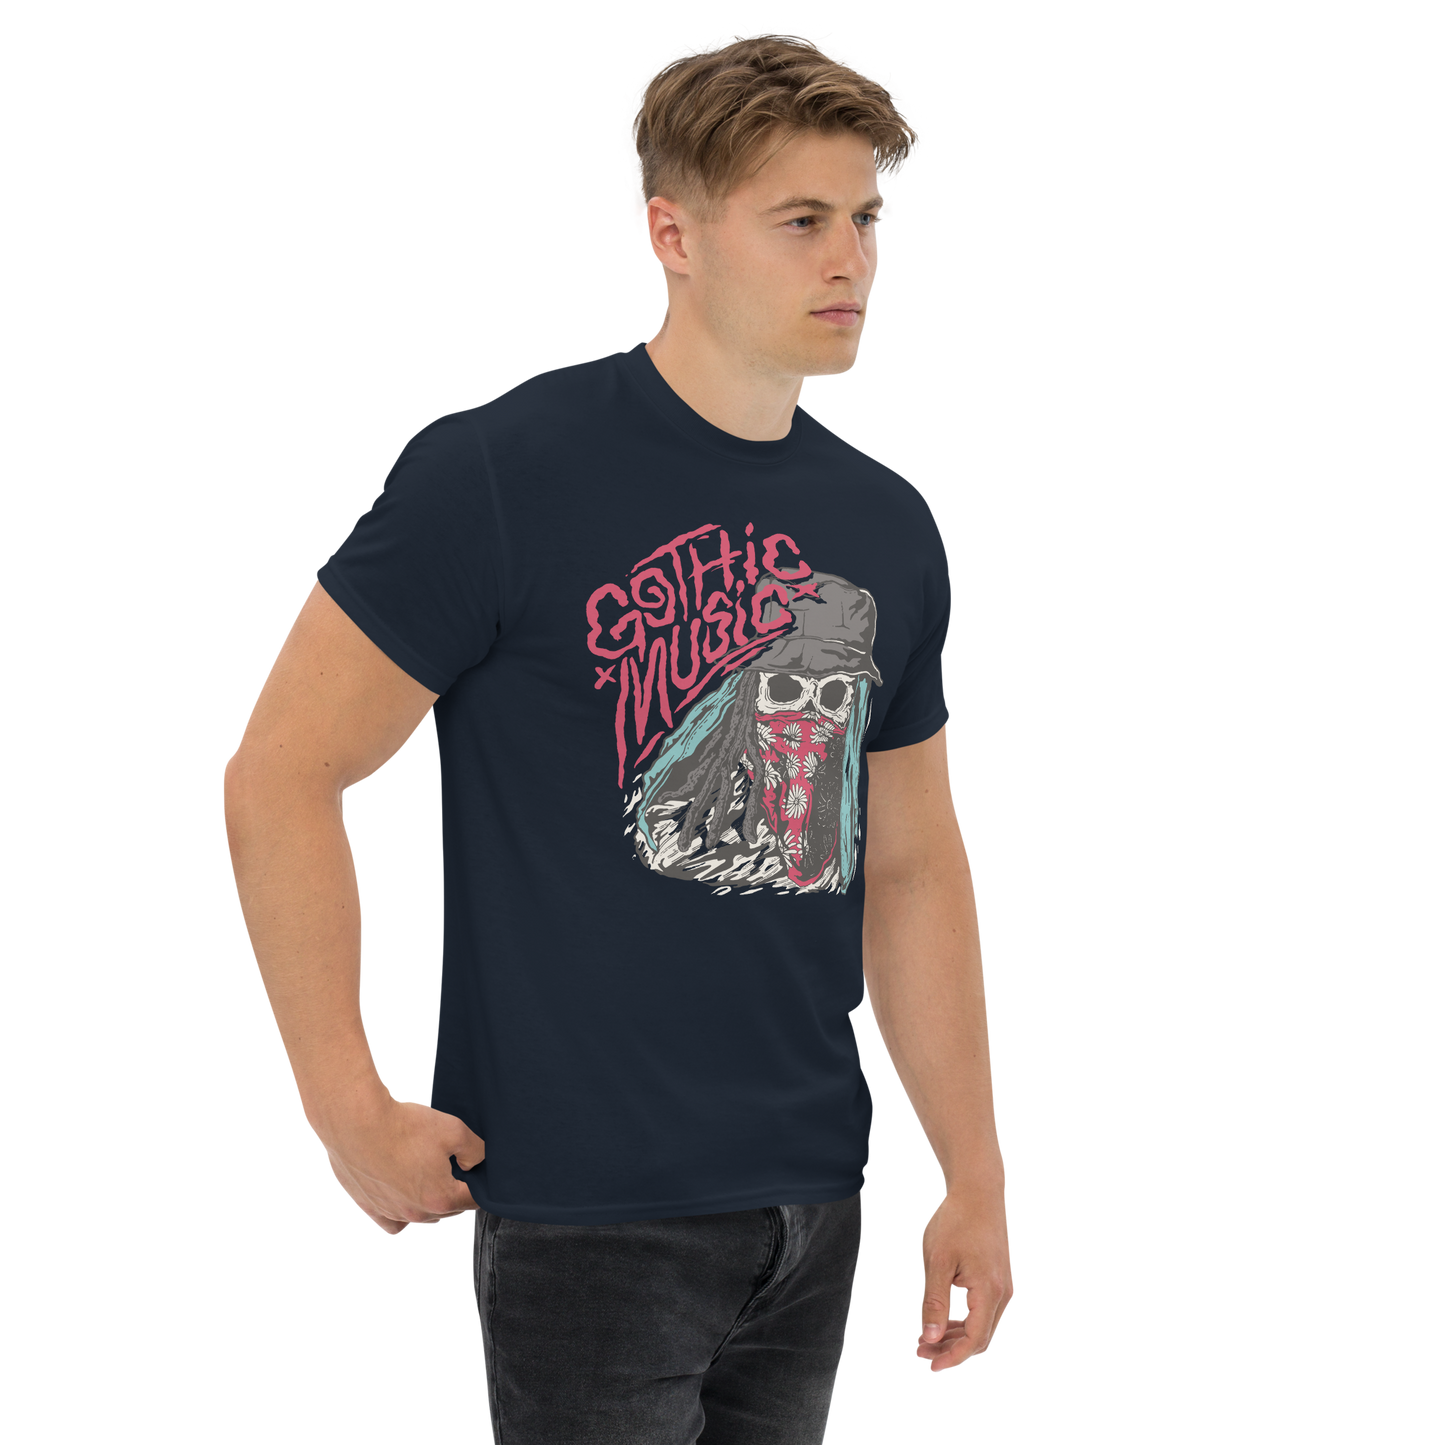 T-Shirt Gothic / Music